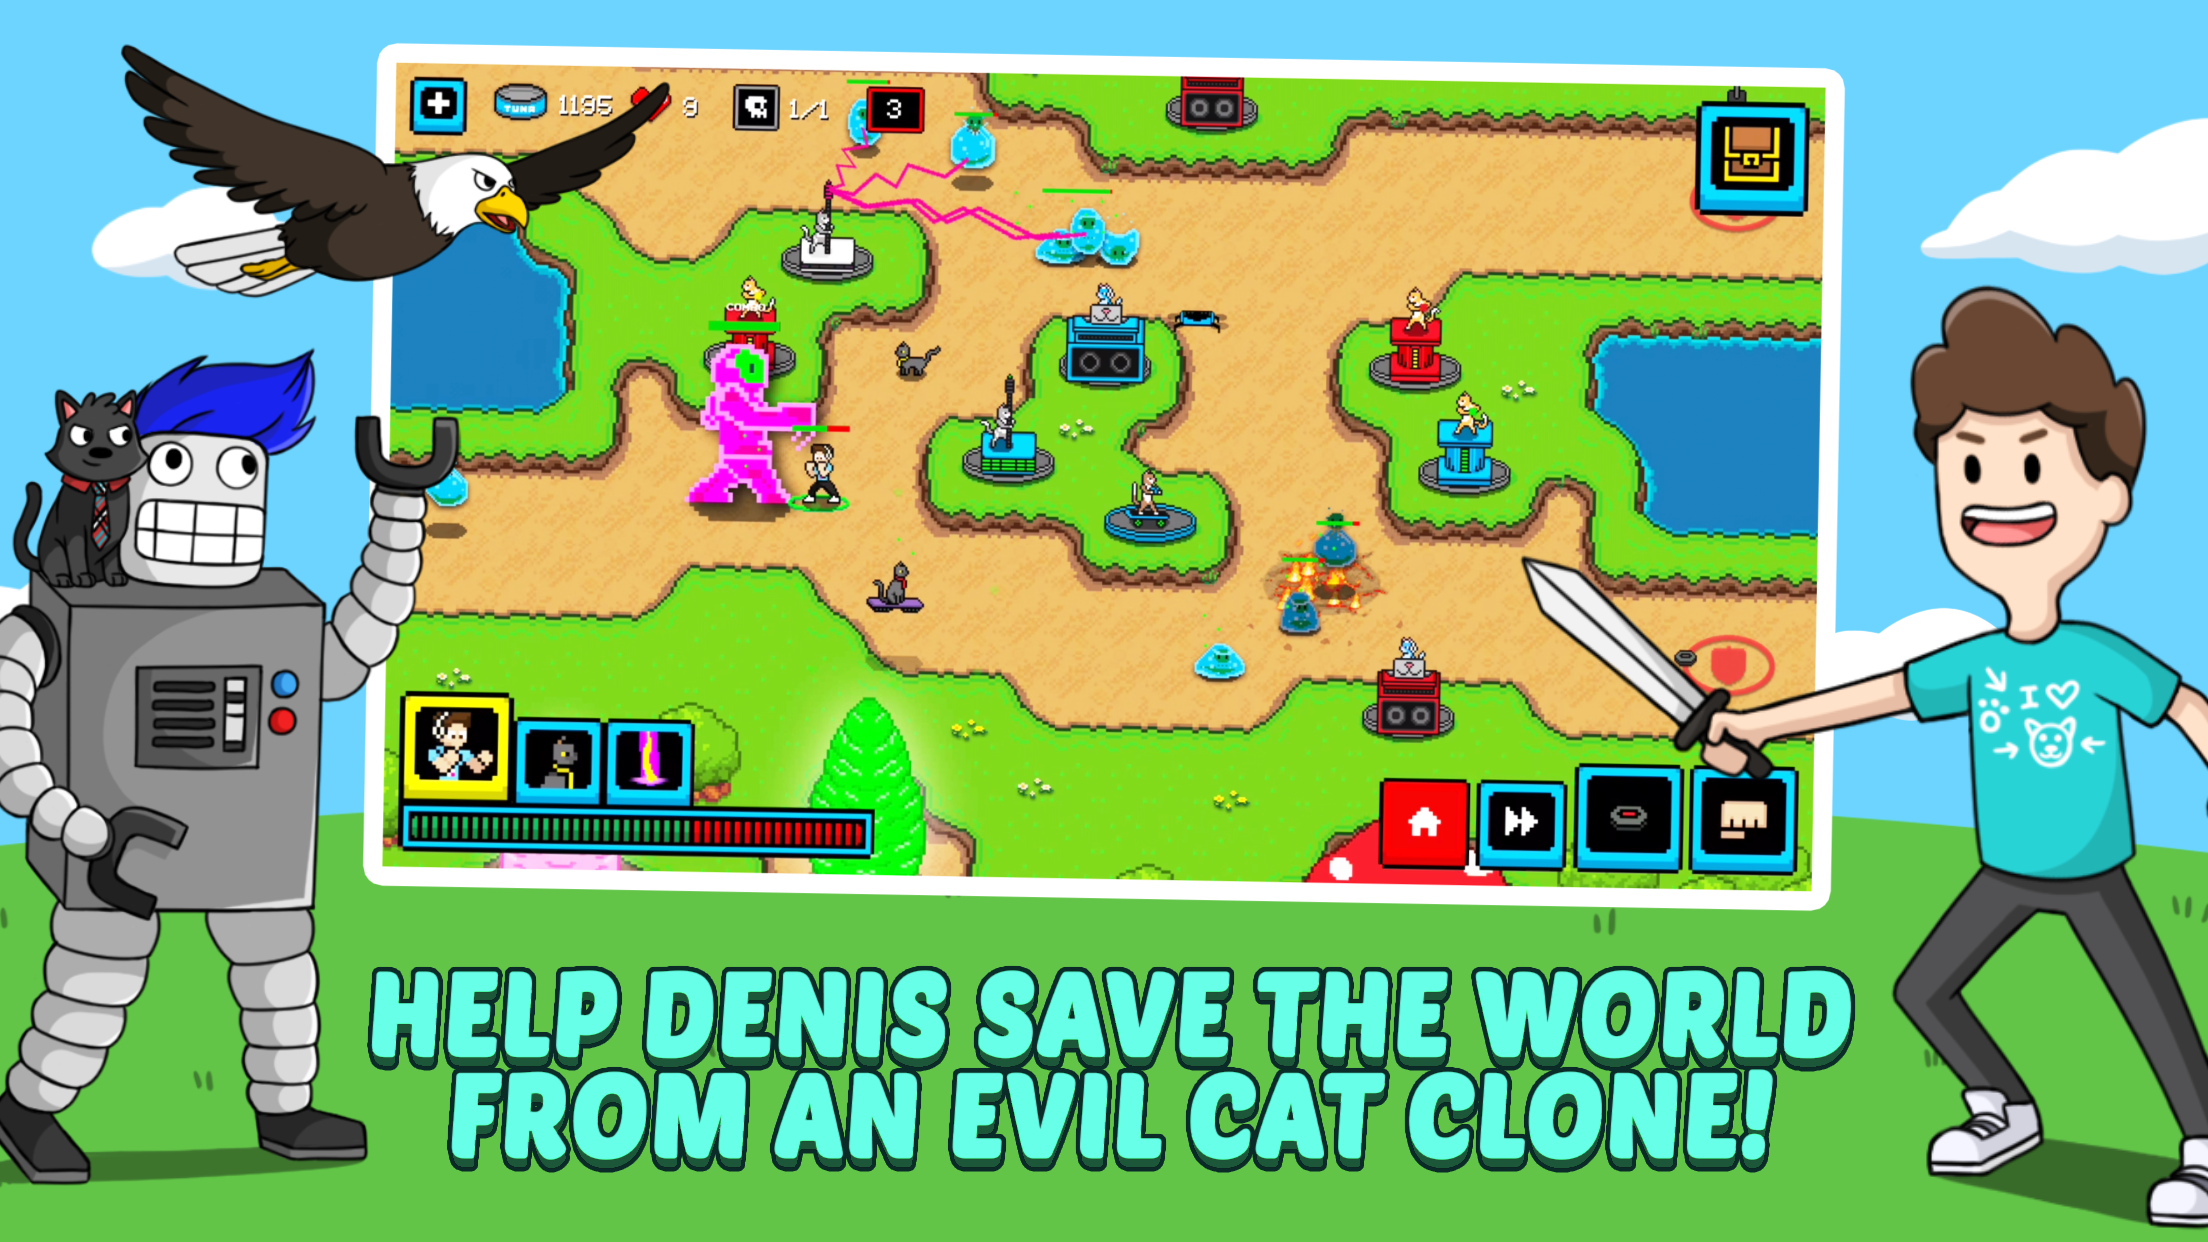 Screenshot 1 of Кошки и косплей: эпический файтинг в жанре Tower Defense 6.0.3